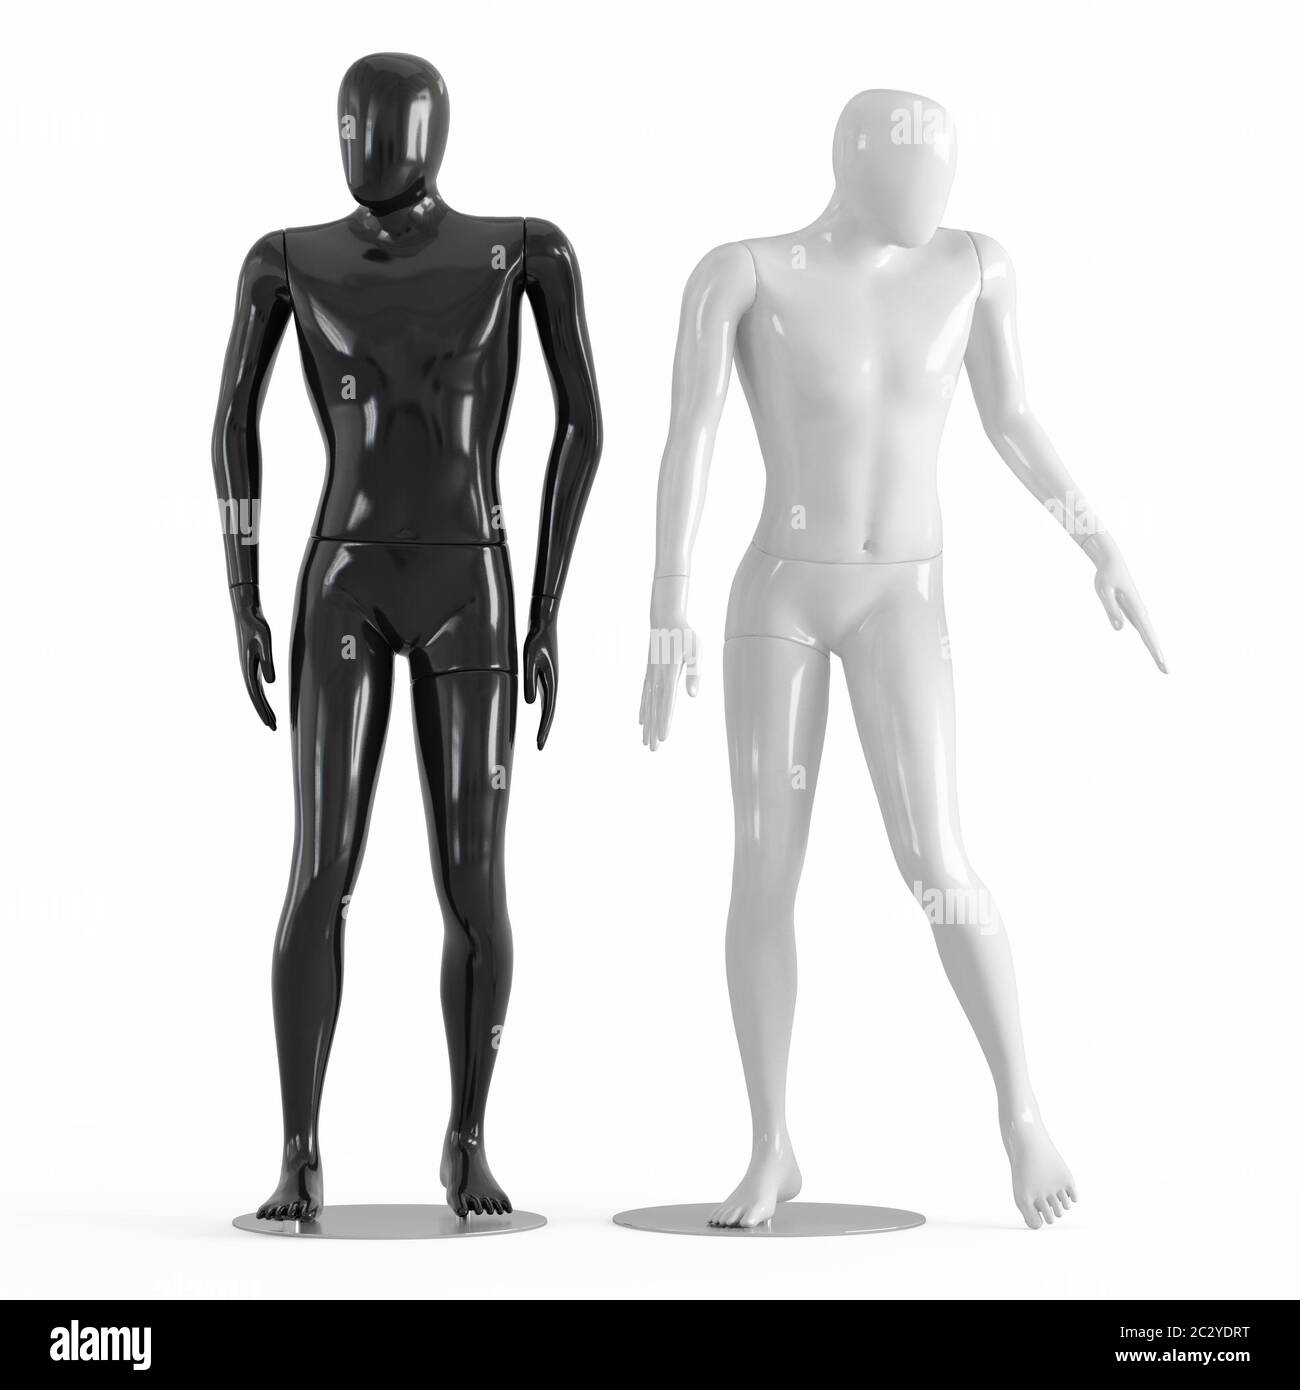 Manichini maschili senza volto in plastica bianca e nera con rendering 3D Foto Stock